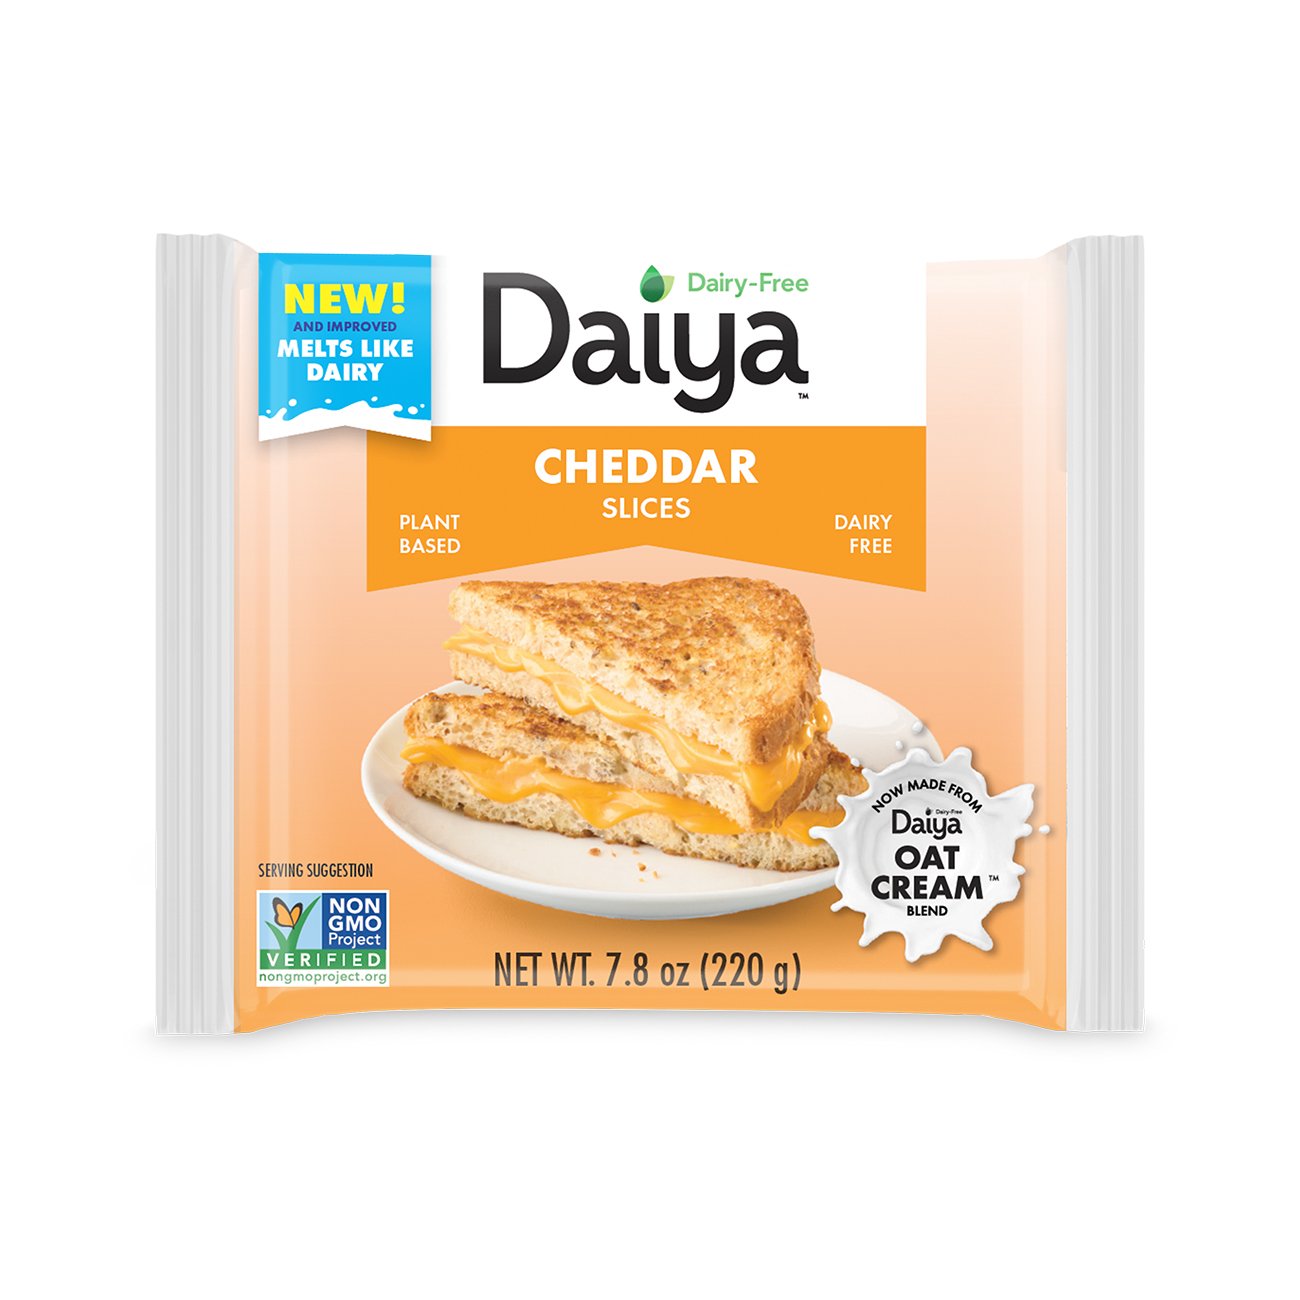 Daiya Cheddar Style Slices Vegan Cheese Shop Cheese At H E B 